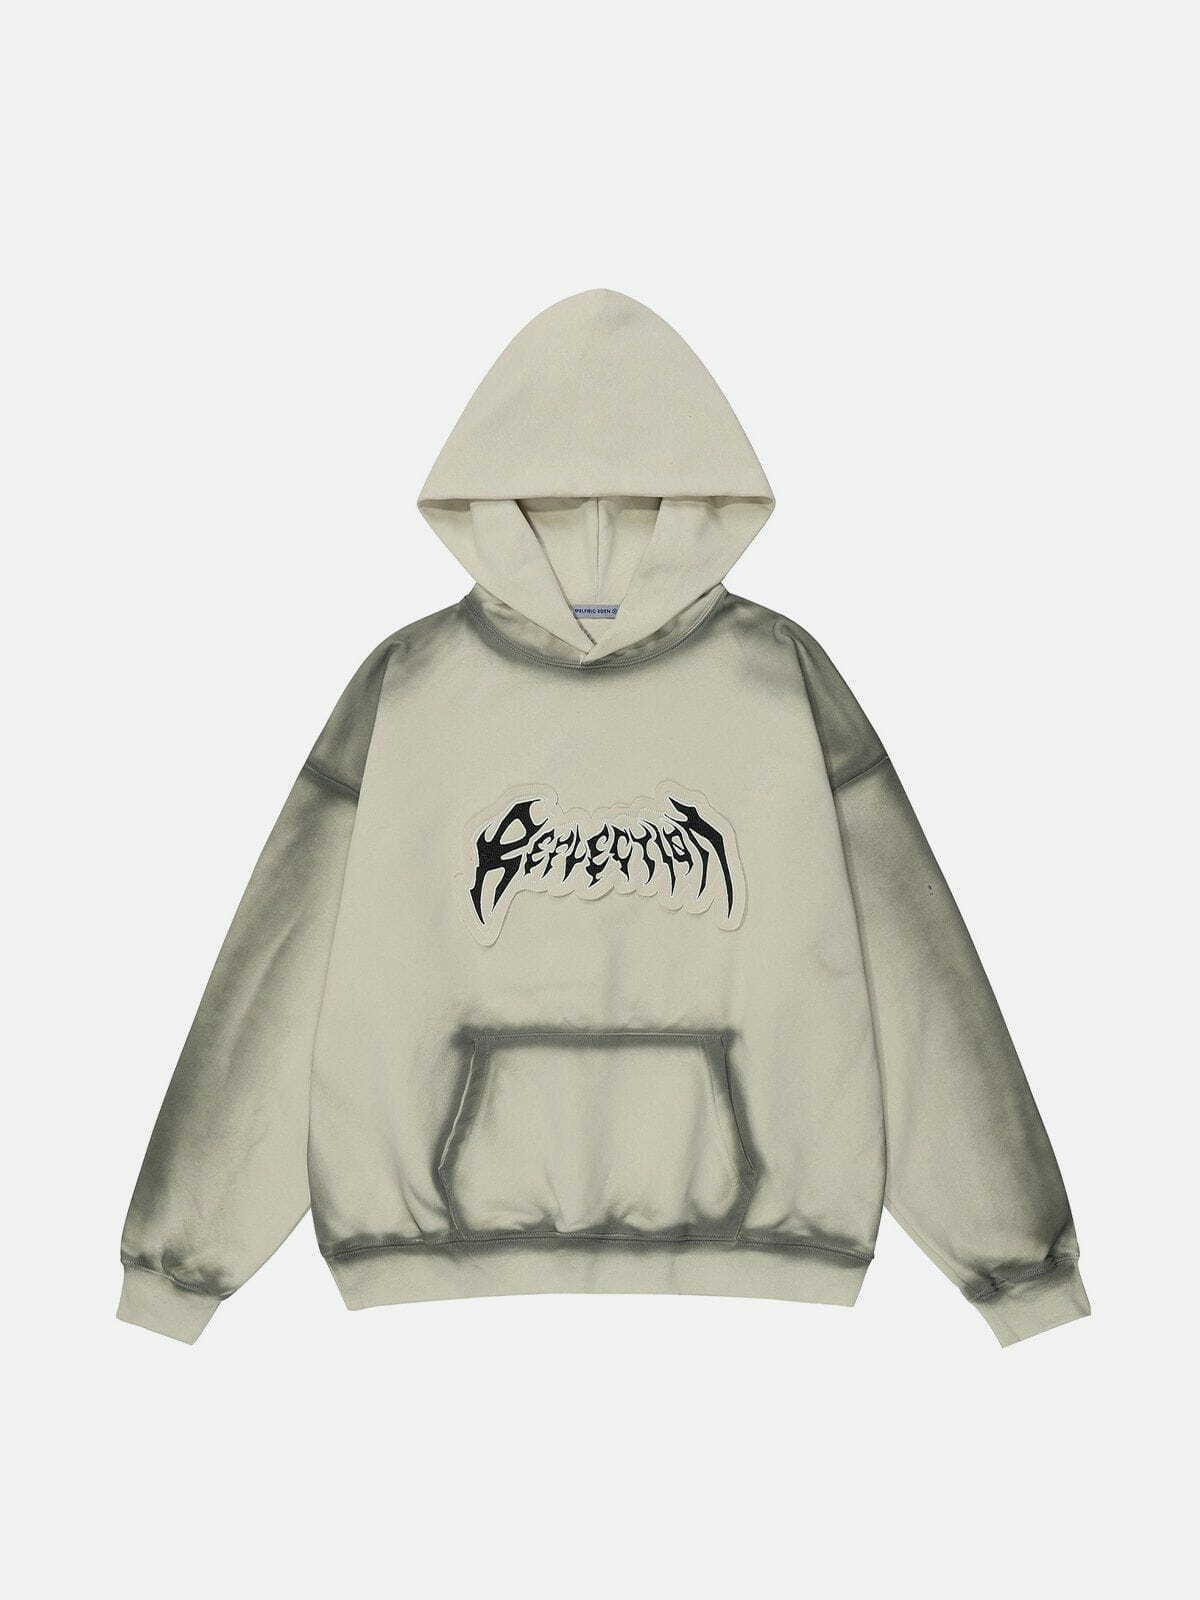 retro inkjet printing hoodie edgy streetwear 2535